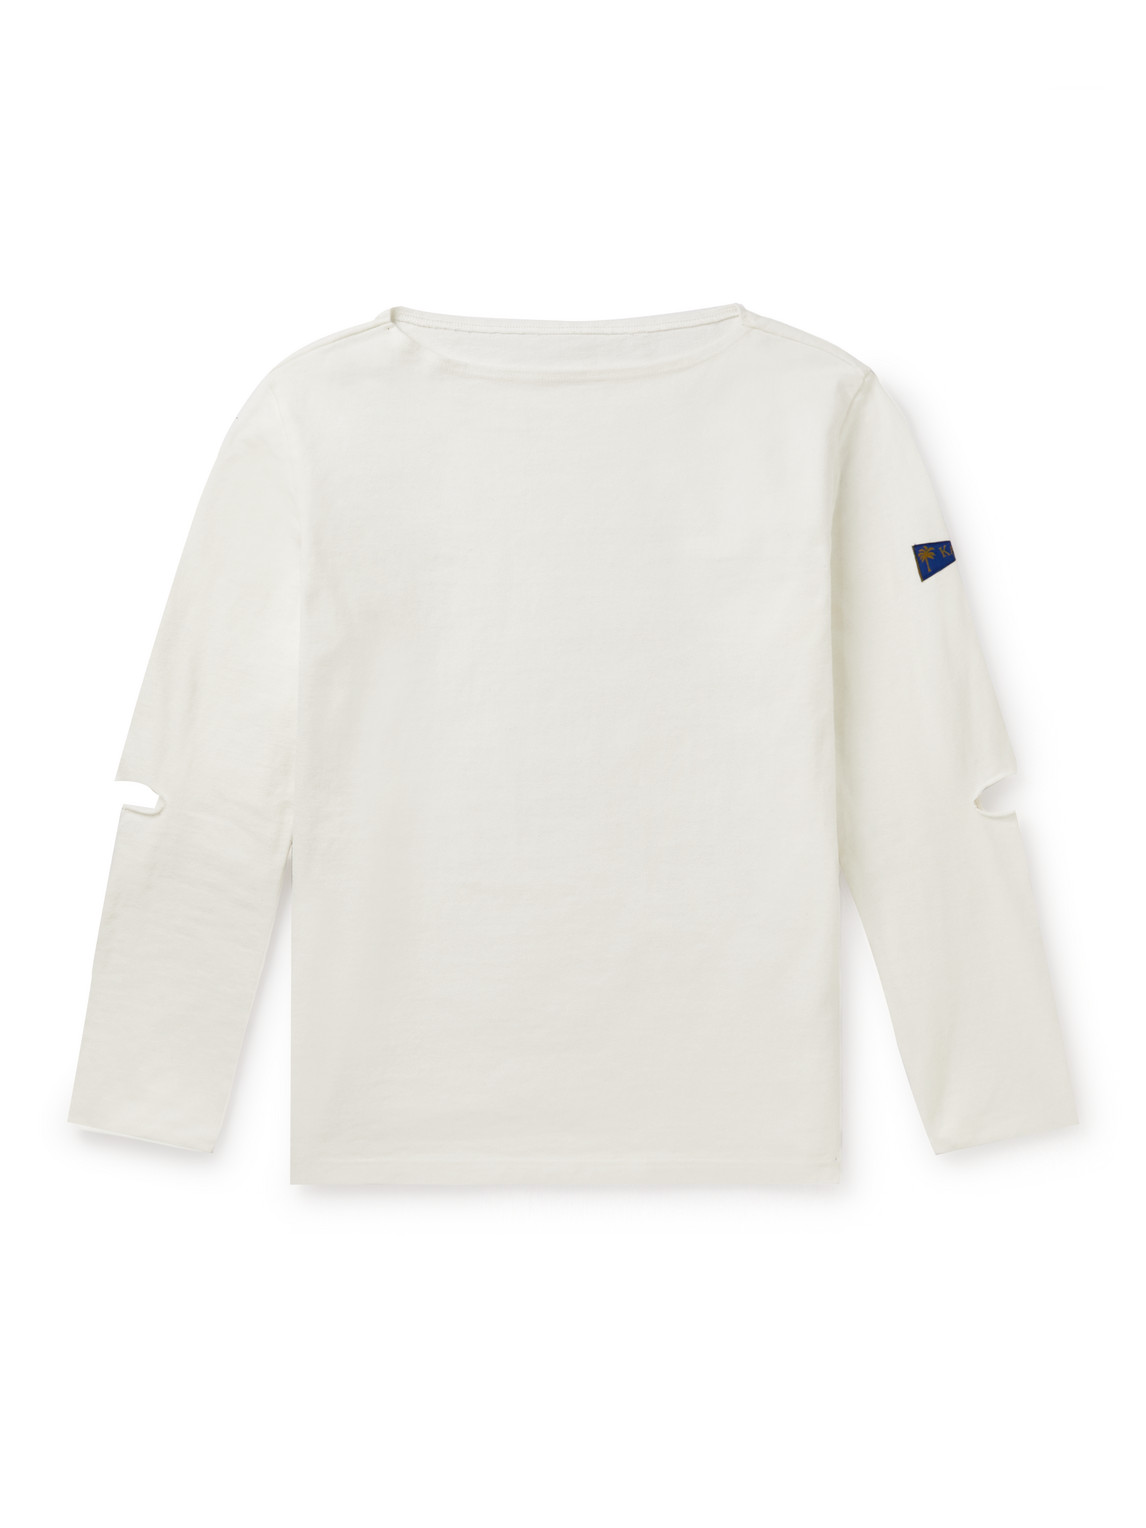 KAPITAL - Logo-Appliquéd Cut-Out Printed Cotton-Jersey T-Shirt - Men - White - 2 von KAPITAL